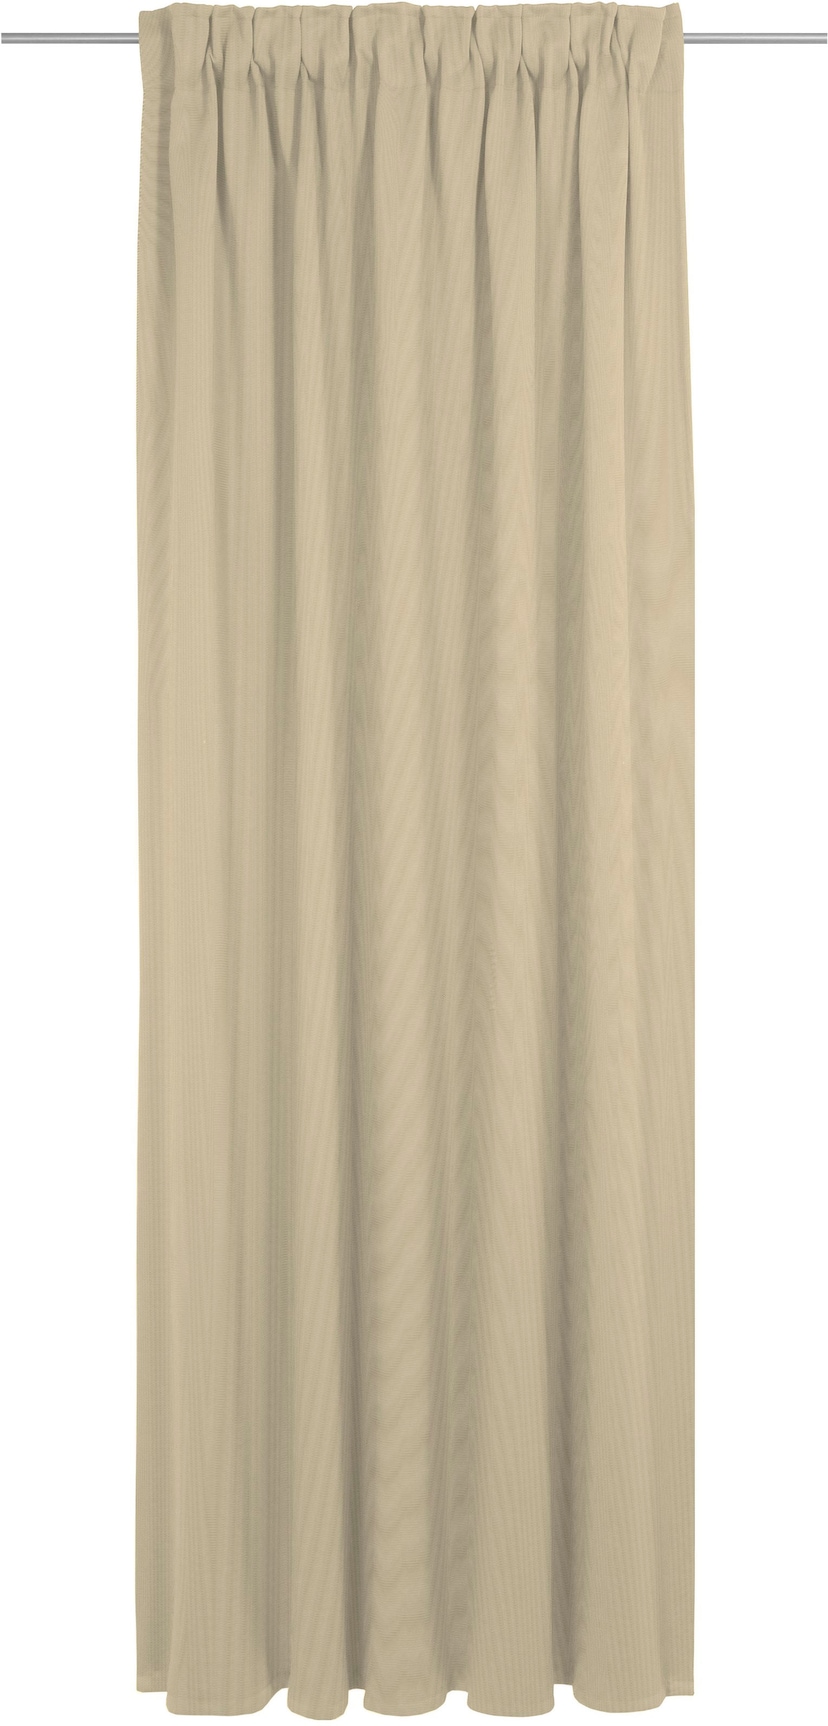 SCHÖNER WOHNEN-Kollektion Vorhang »Solid«, (1 Look St.), unifarbenen zeilosen, im